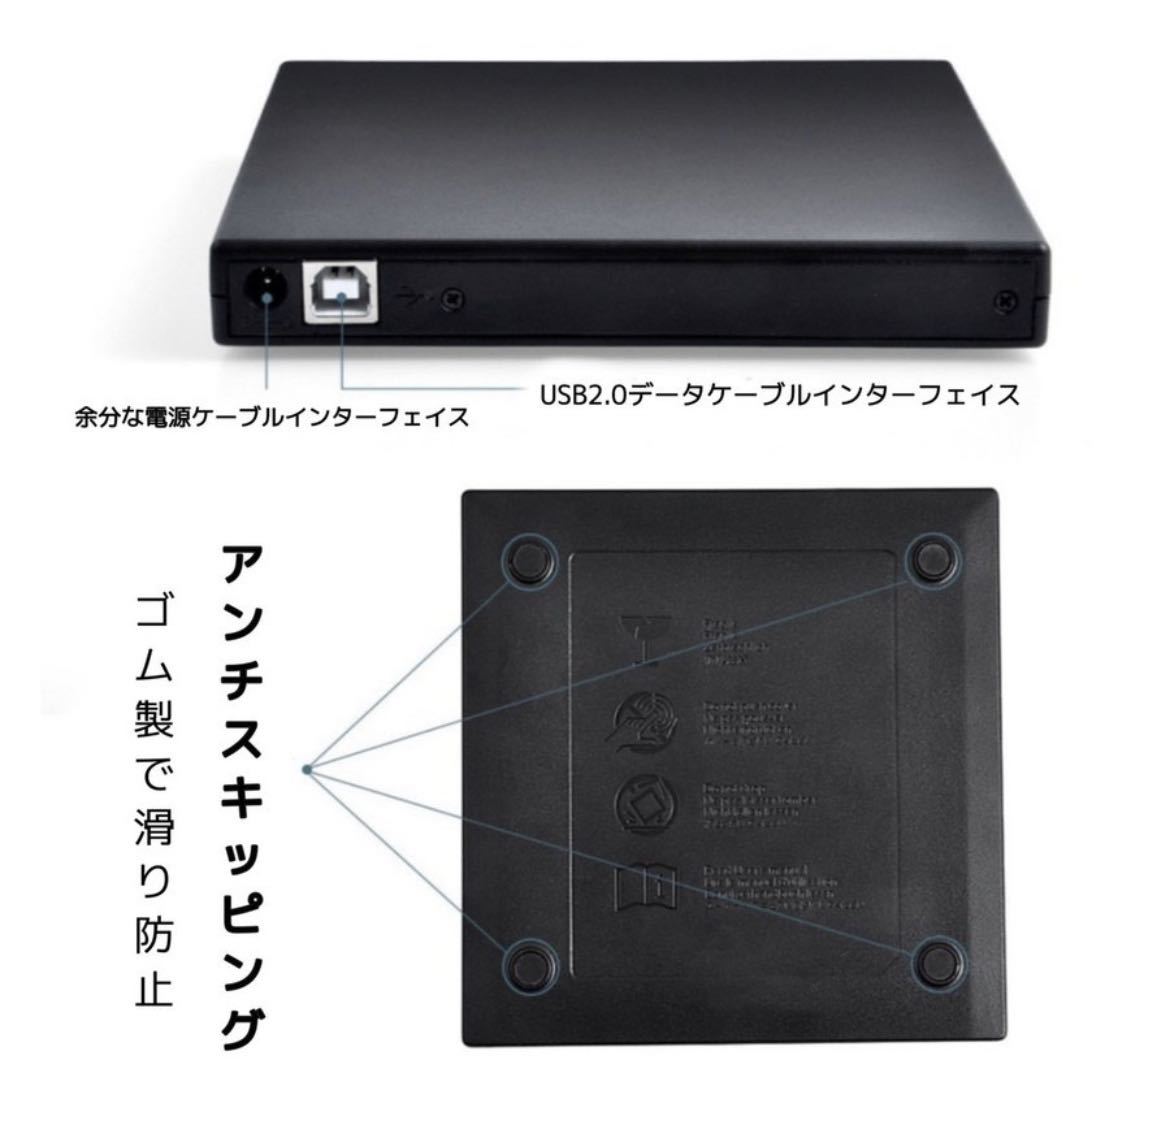 【アウトレット品】DVDドライブ 外付け USB2.0 ポータブル CDドライブ Mac Windows CD-RW DVD-R スリム コンパクト 書き込み対応 ブラック